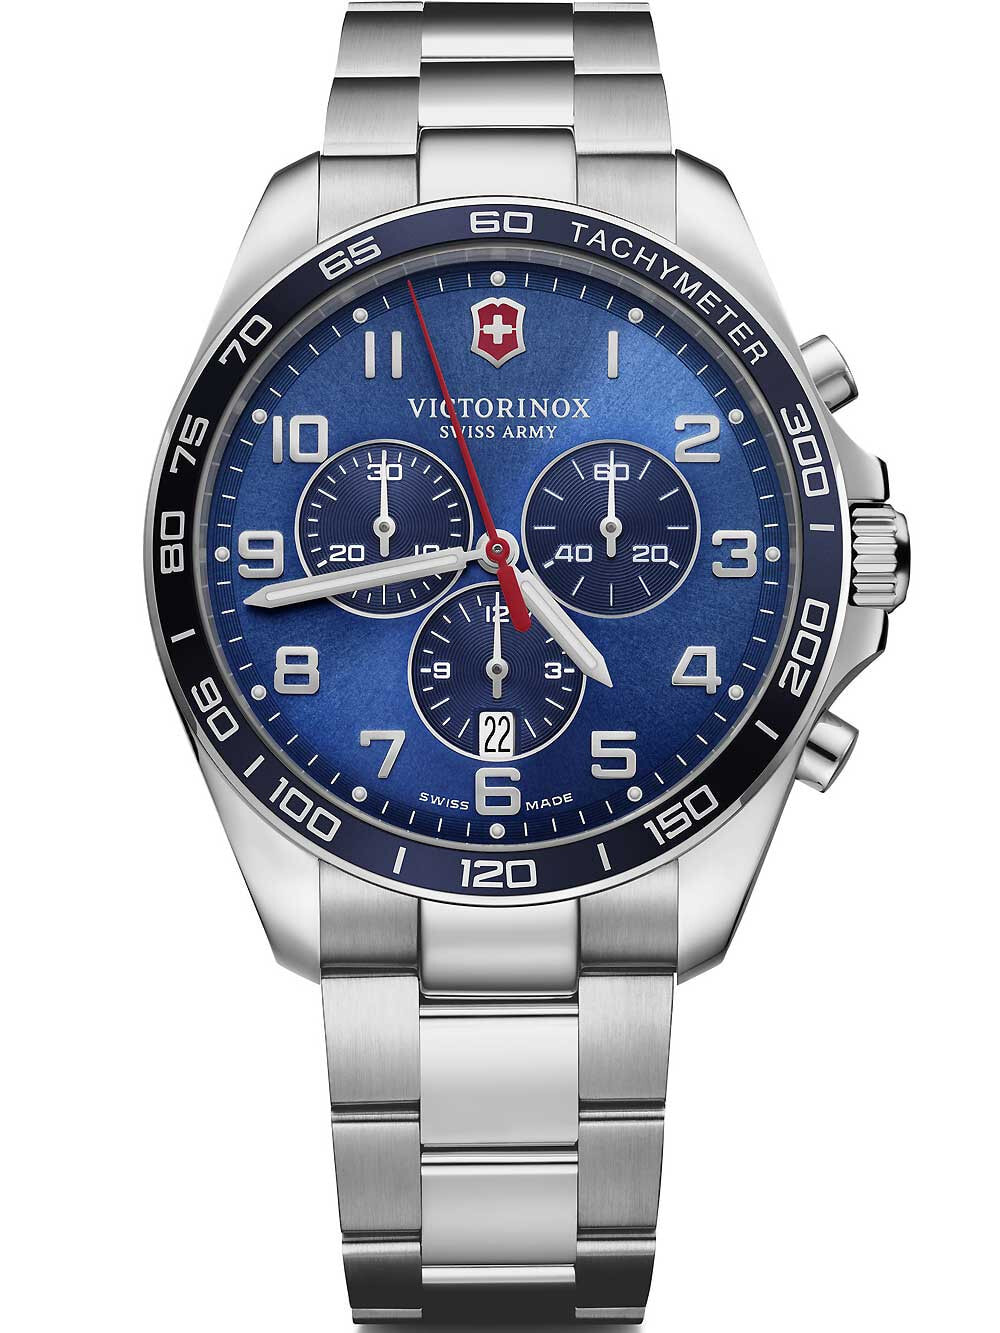 Мужские наручные часы с серебристым браслетом Victorinox 241901 Fieldforce chronograph 42mm 10ATM